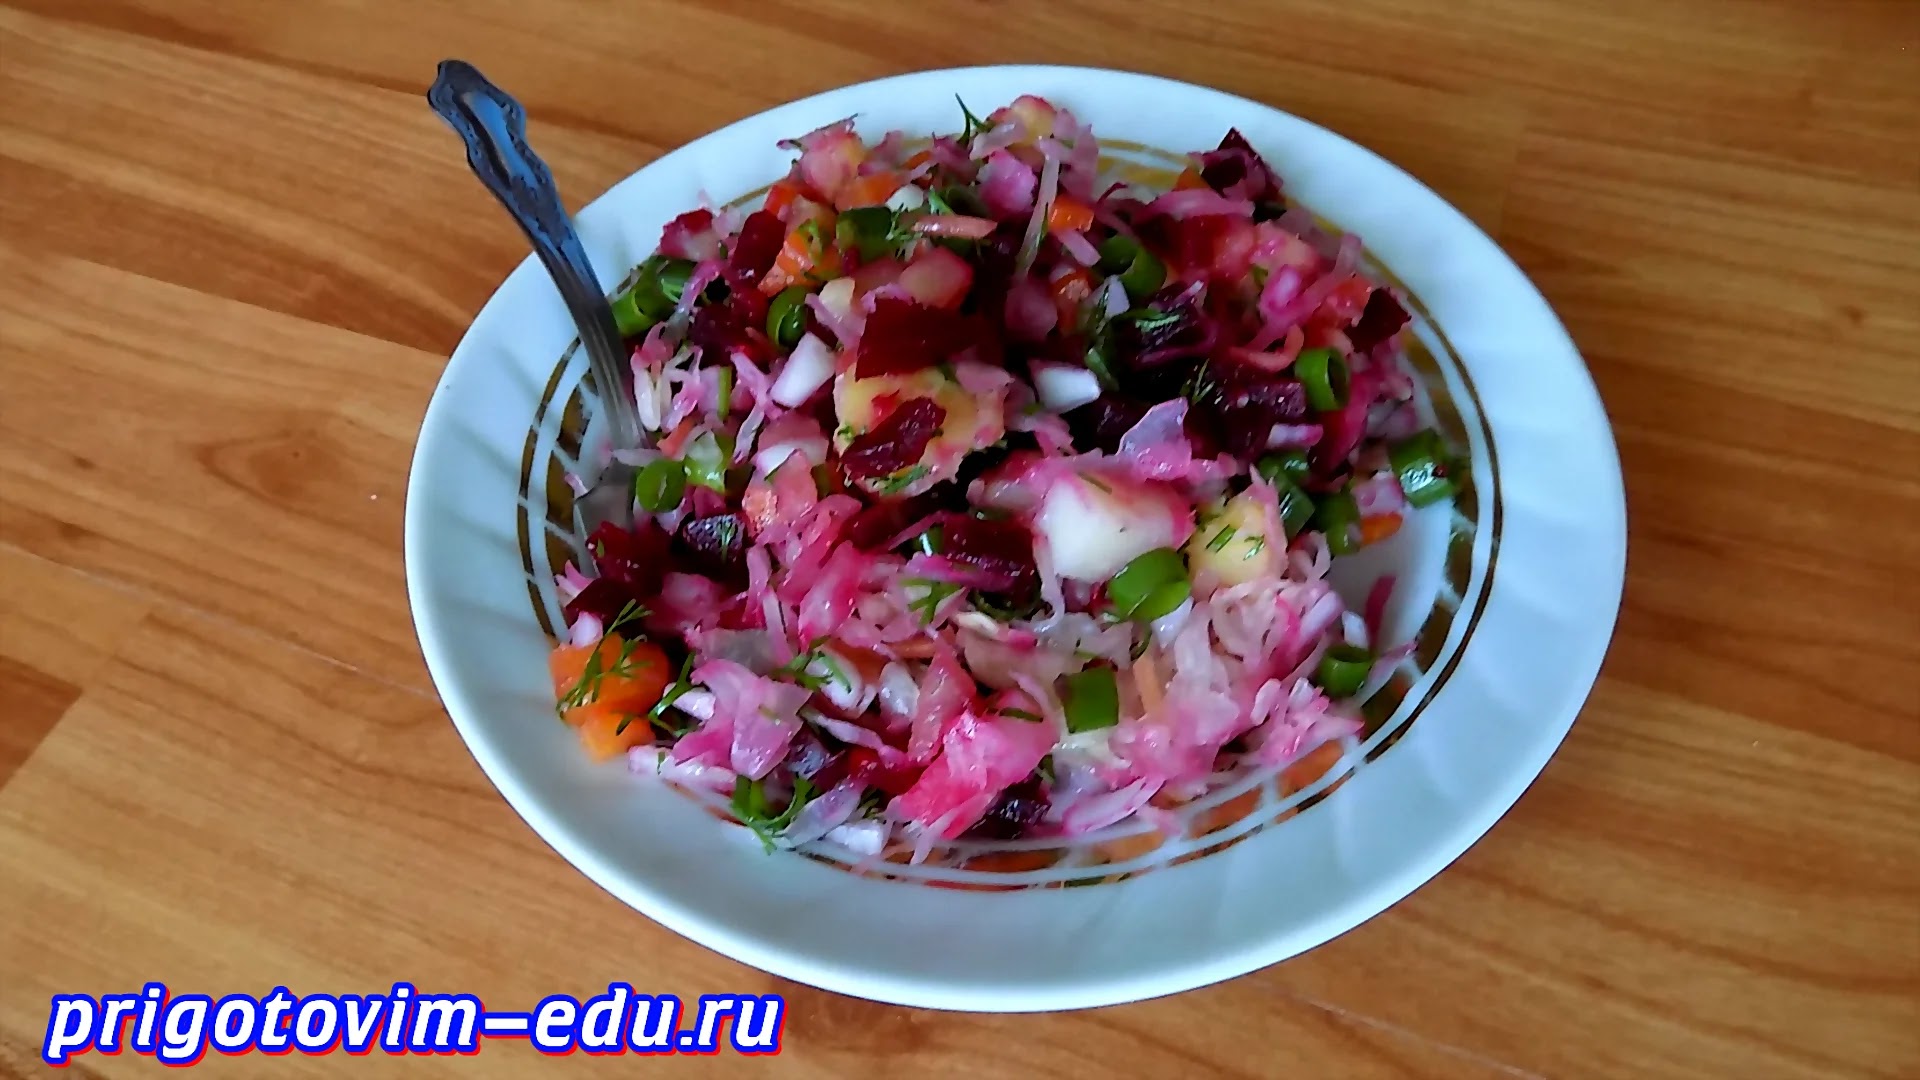 Видео рецепт овощного салата винегрет